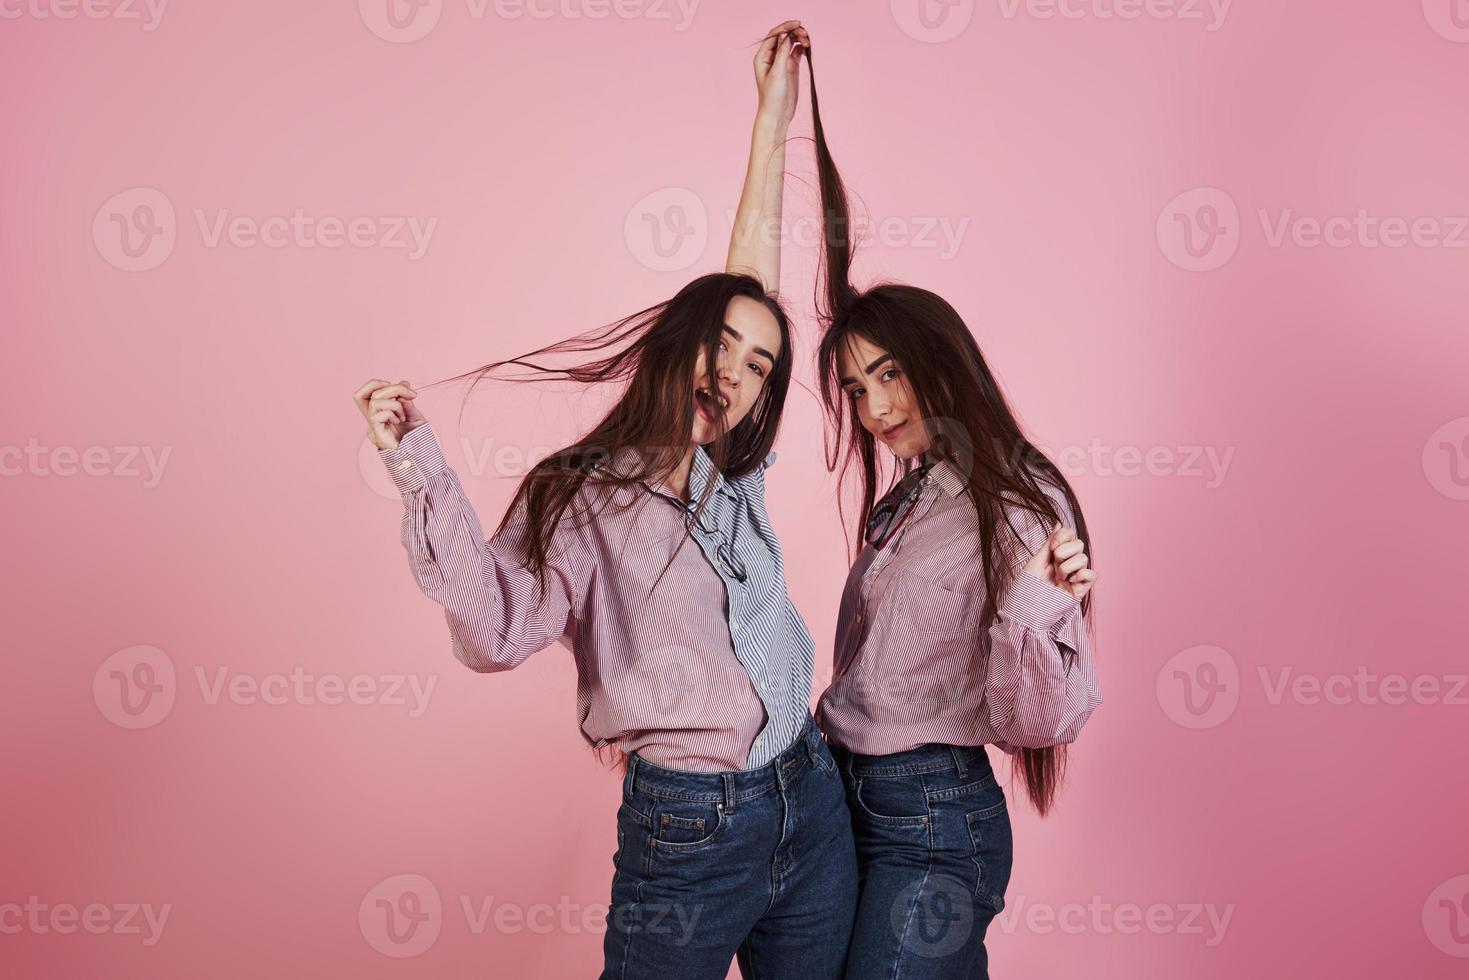 bara ludna lekfulla rörelser. unga kvinnor som har kul i studion med rosa bakgrund. bedårande tvillingar foto